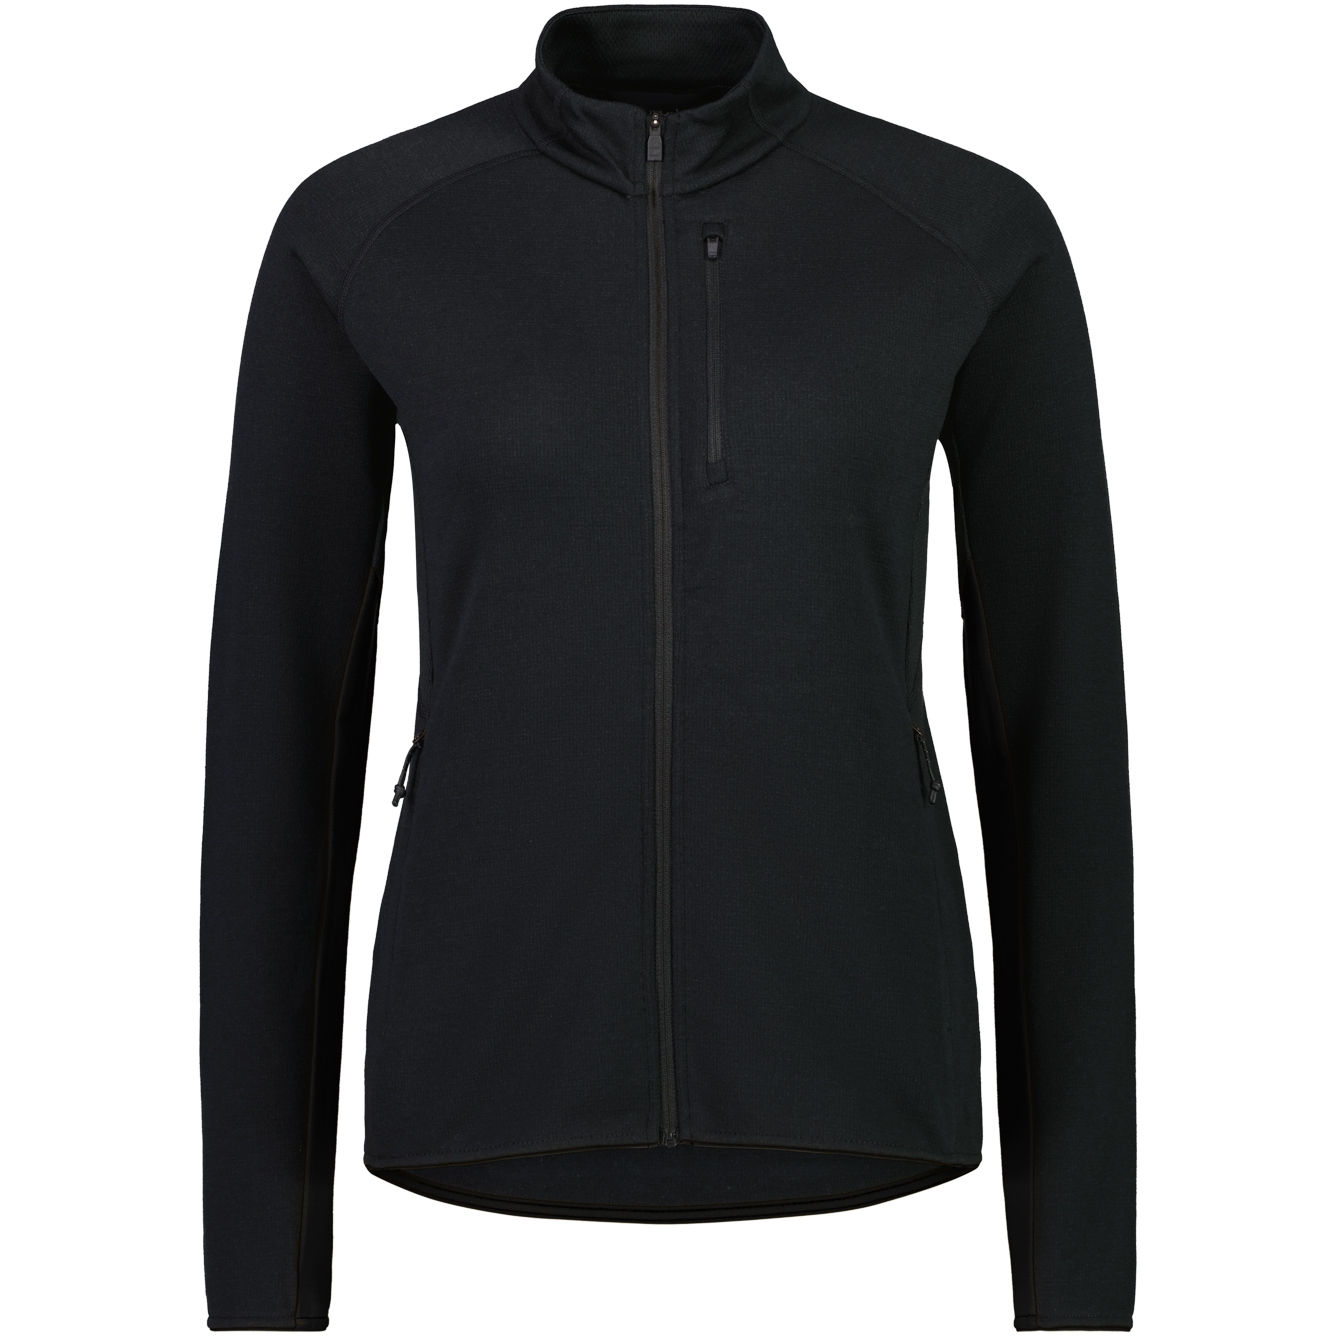 Produktbild von Mons Royale Approach Merino Gridlock Jacke Damen - schwarz